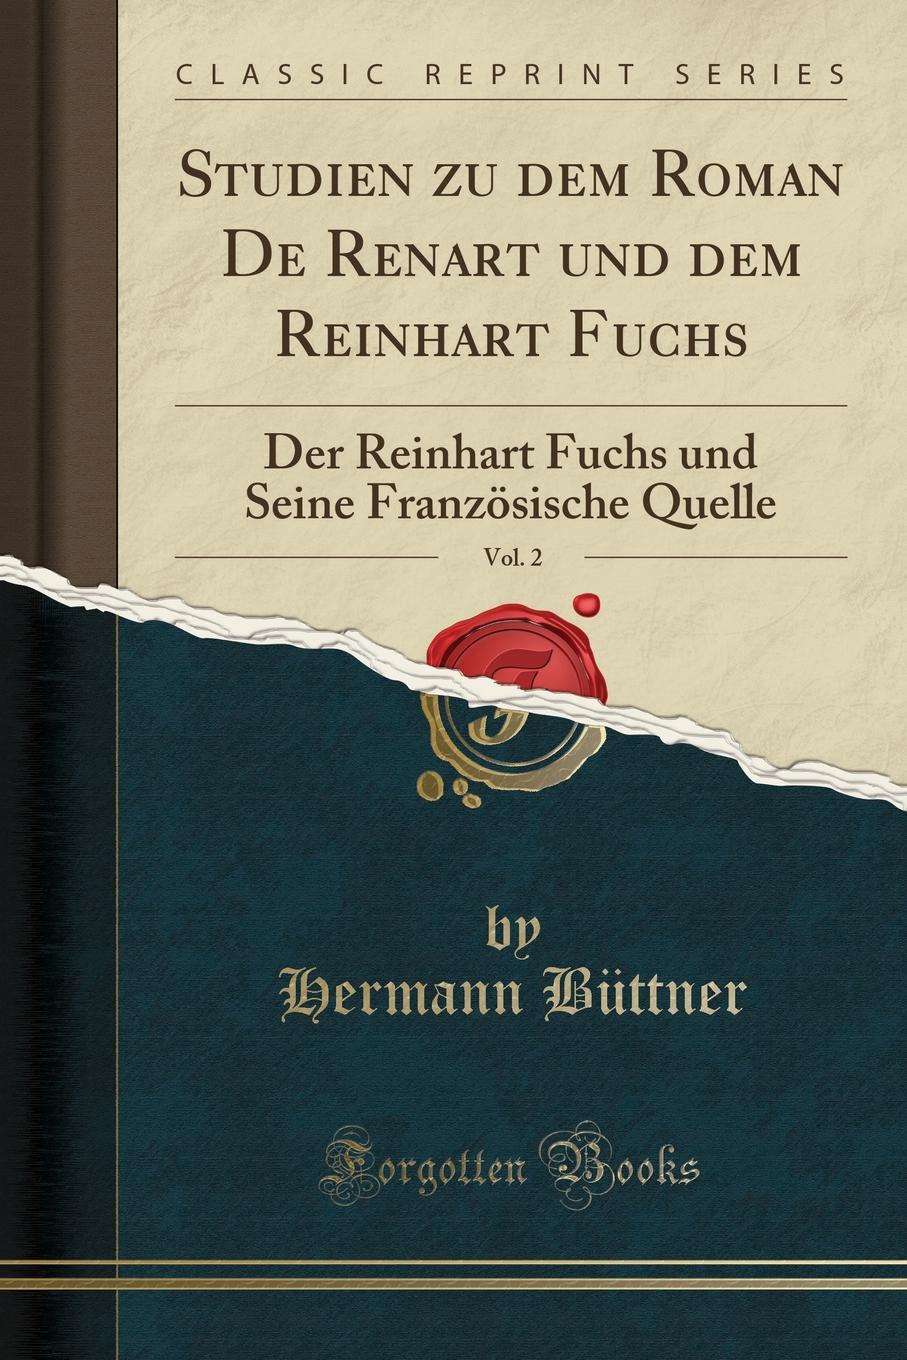 Hermann Büttner Studien zu dem Roman De Renart und dem Reinhart Fuchs, Vol. 2. Der Reinhart Fuchs und Seine Franzosische Quelle (Classic Reprint)